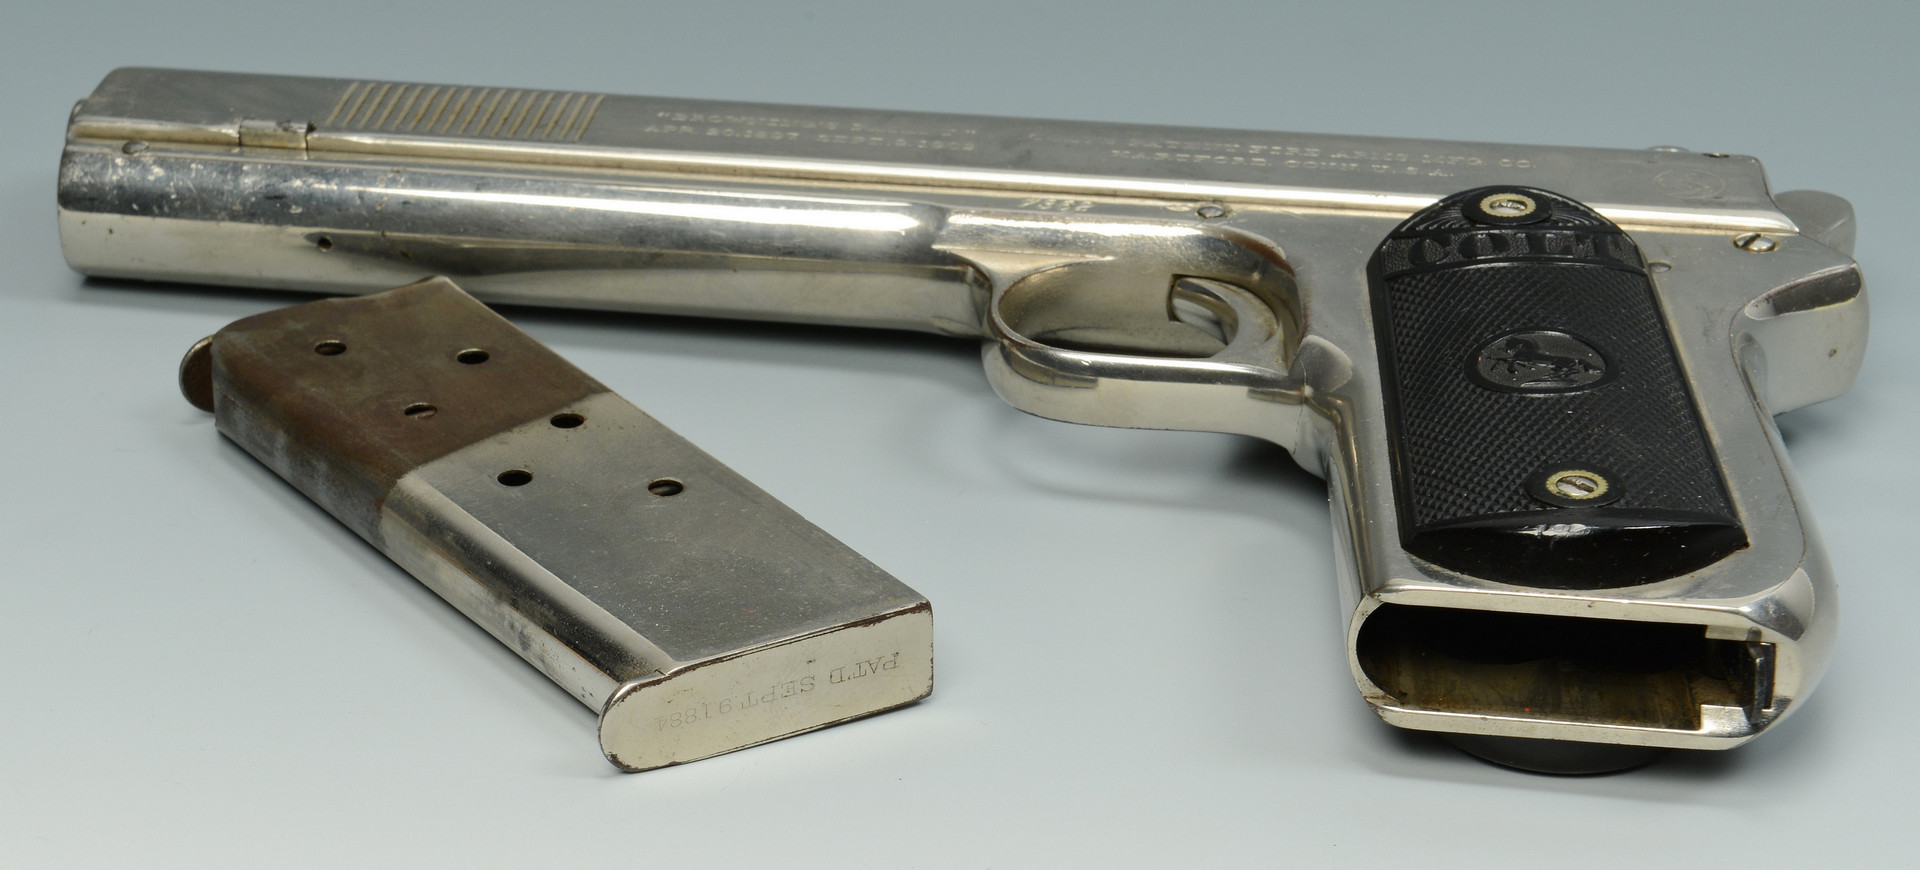 Lot 404: .38 Colt Model 1902 Pistol, Bonnie & Clyde